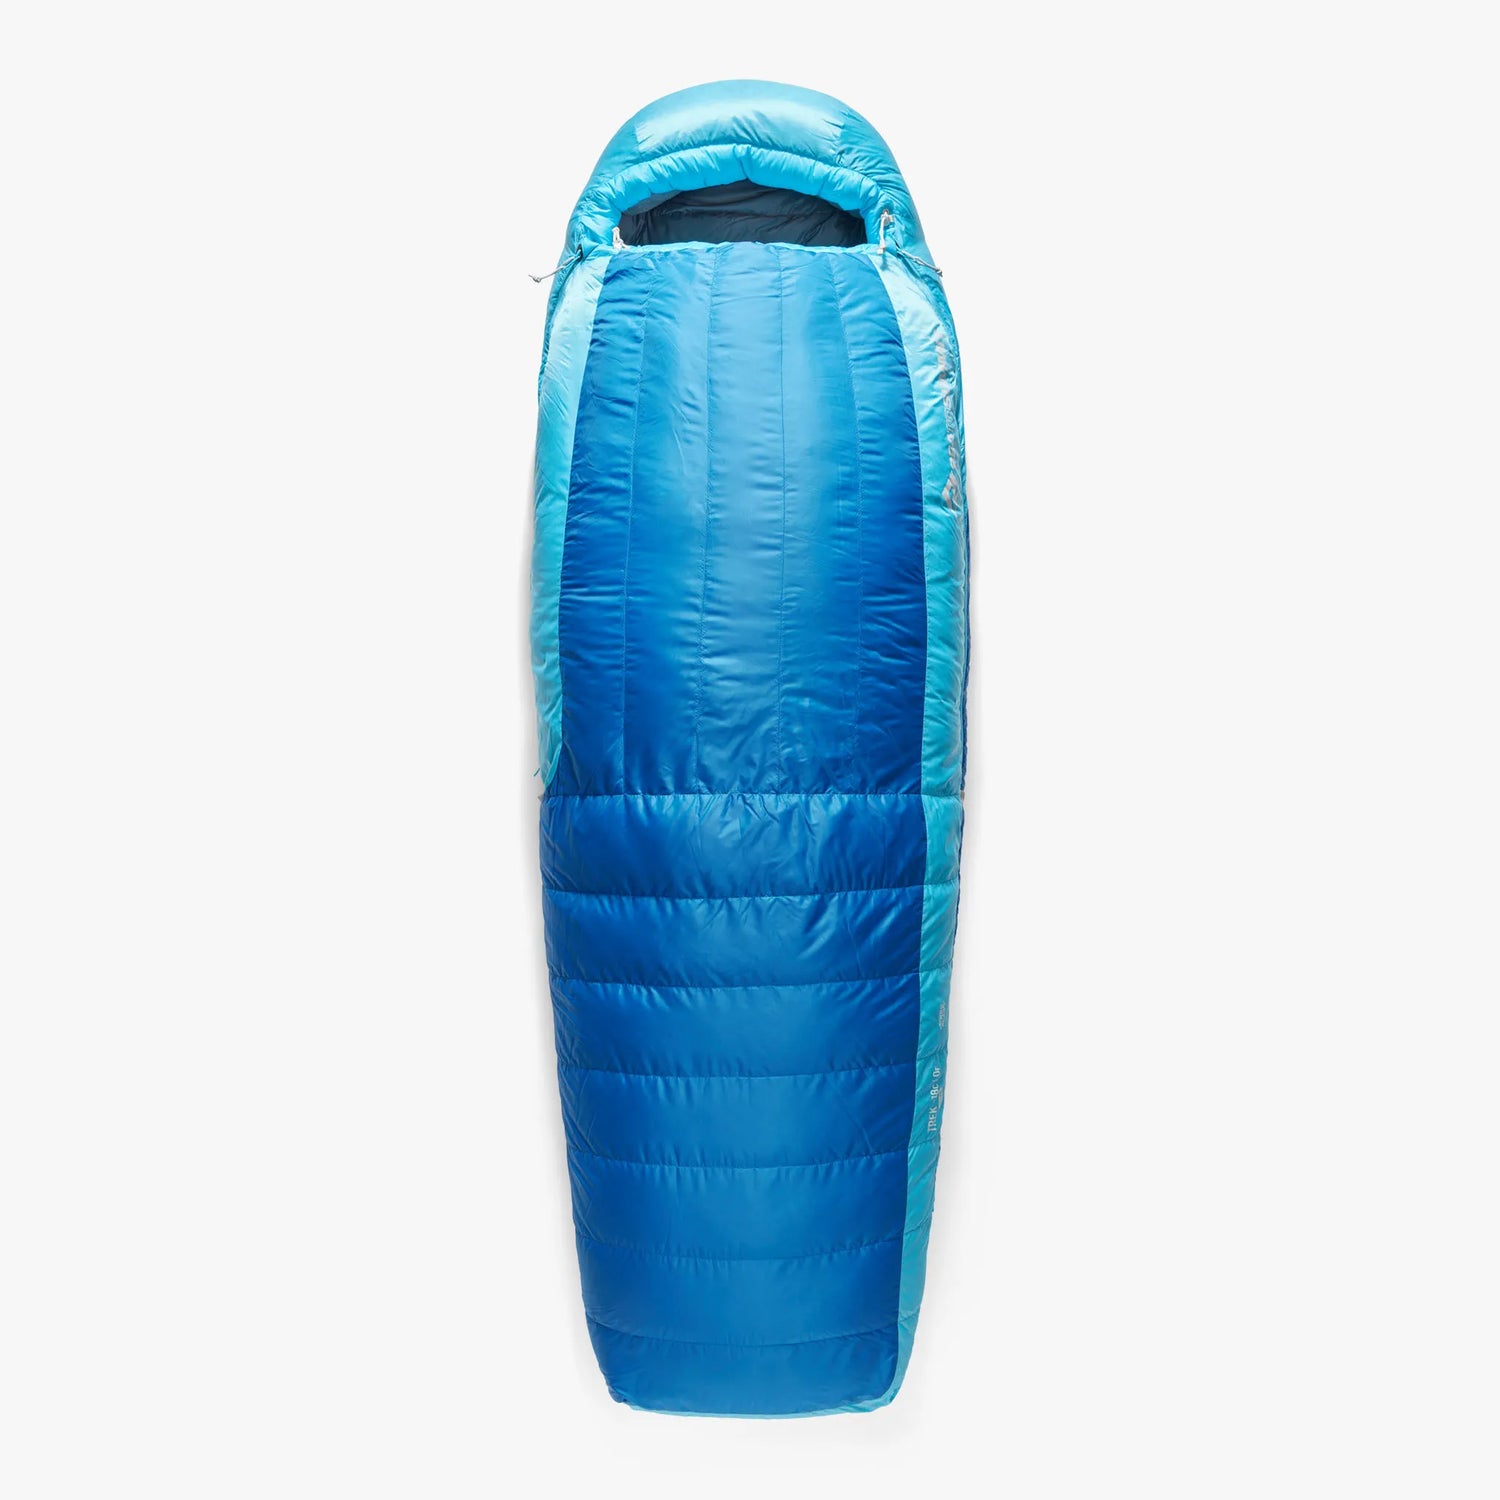 Trek Down Sleeping Bag (-1°C, -9°C & -18°C)